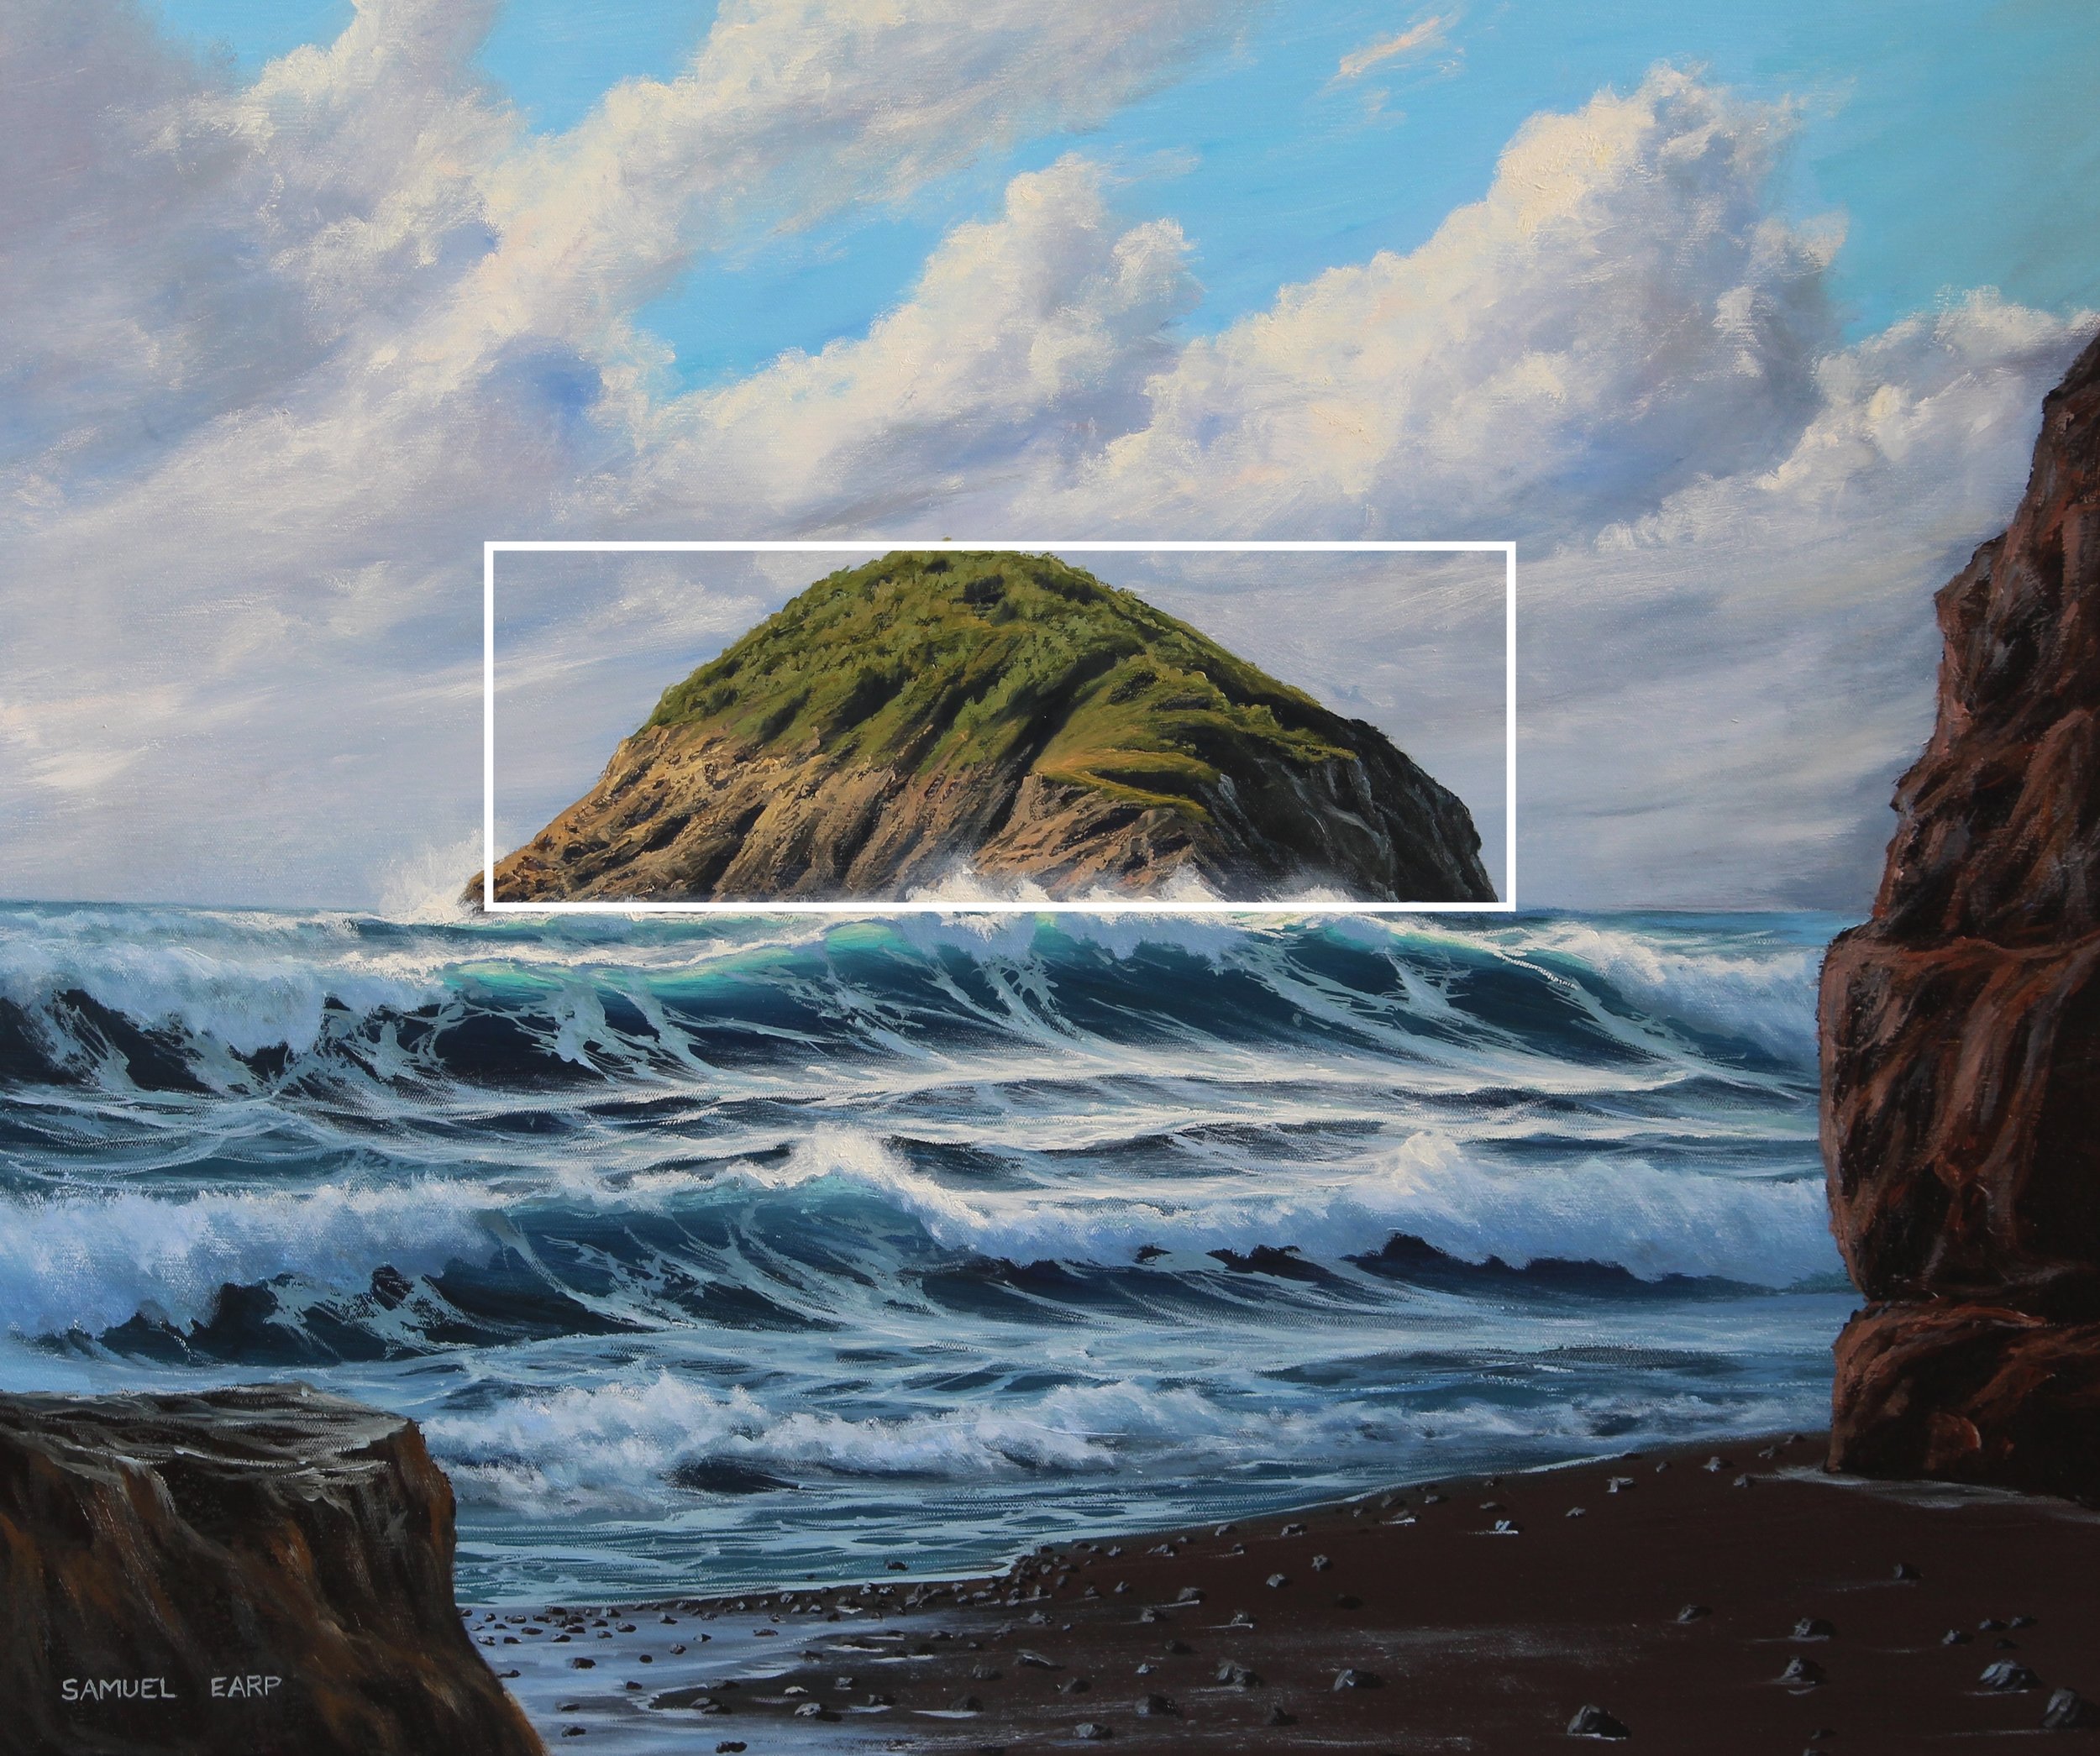 Motuotamatea Island - seascape painting - oil painting copy.JPG